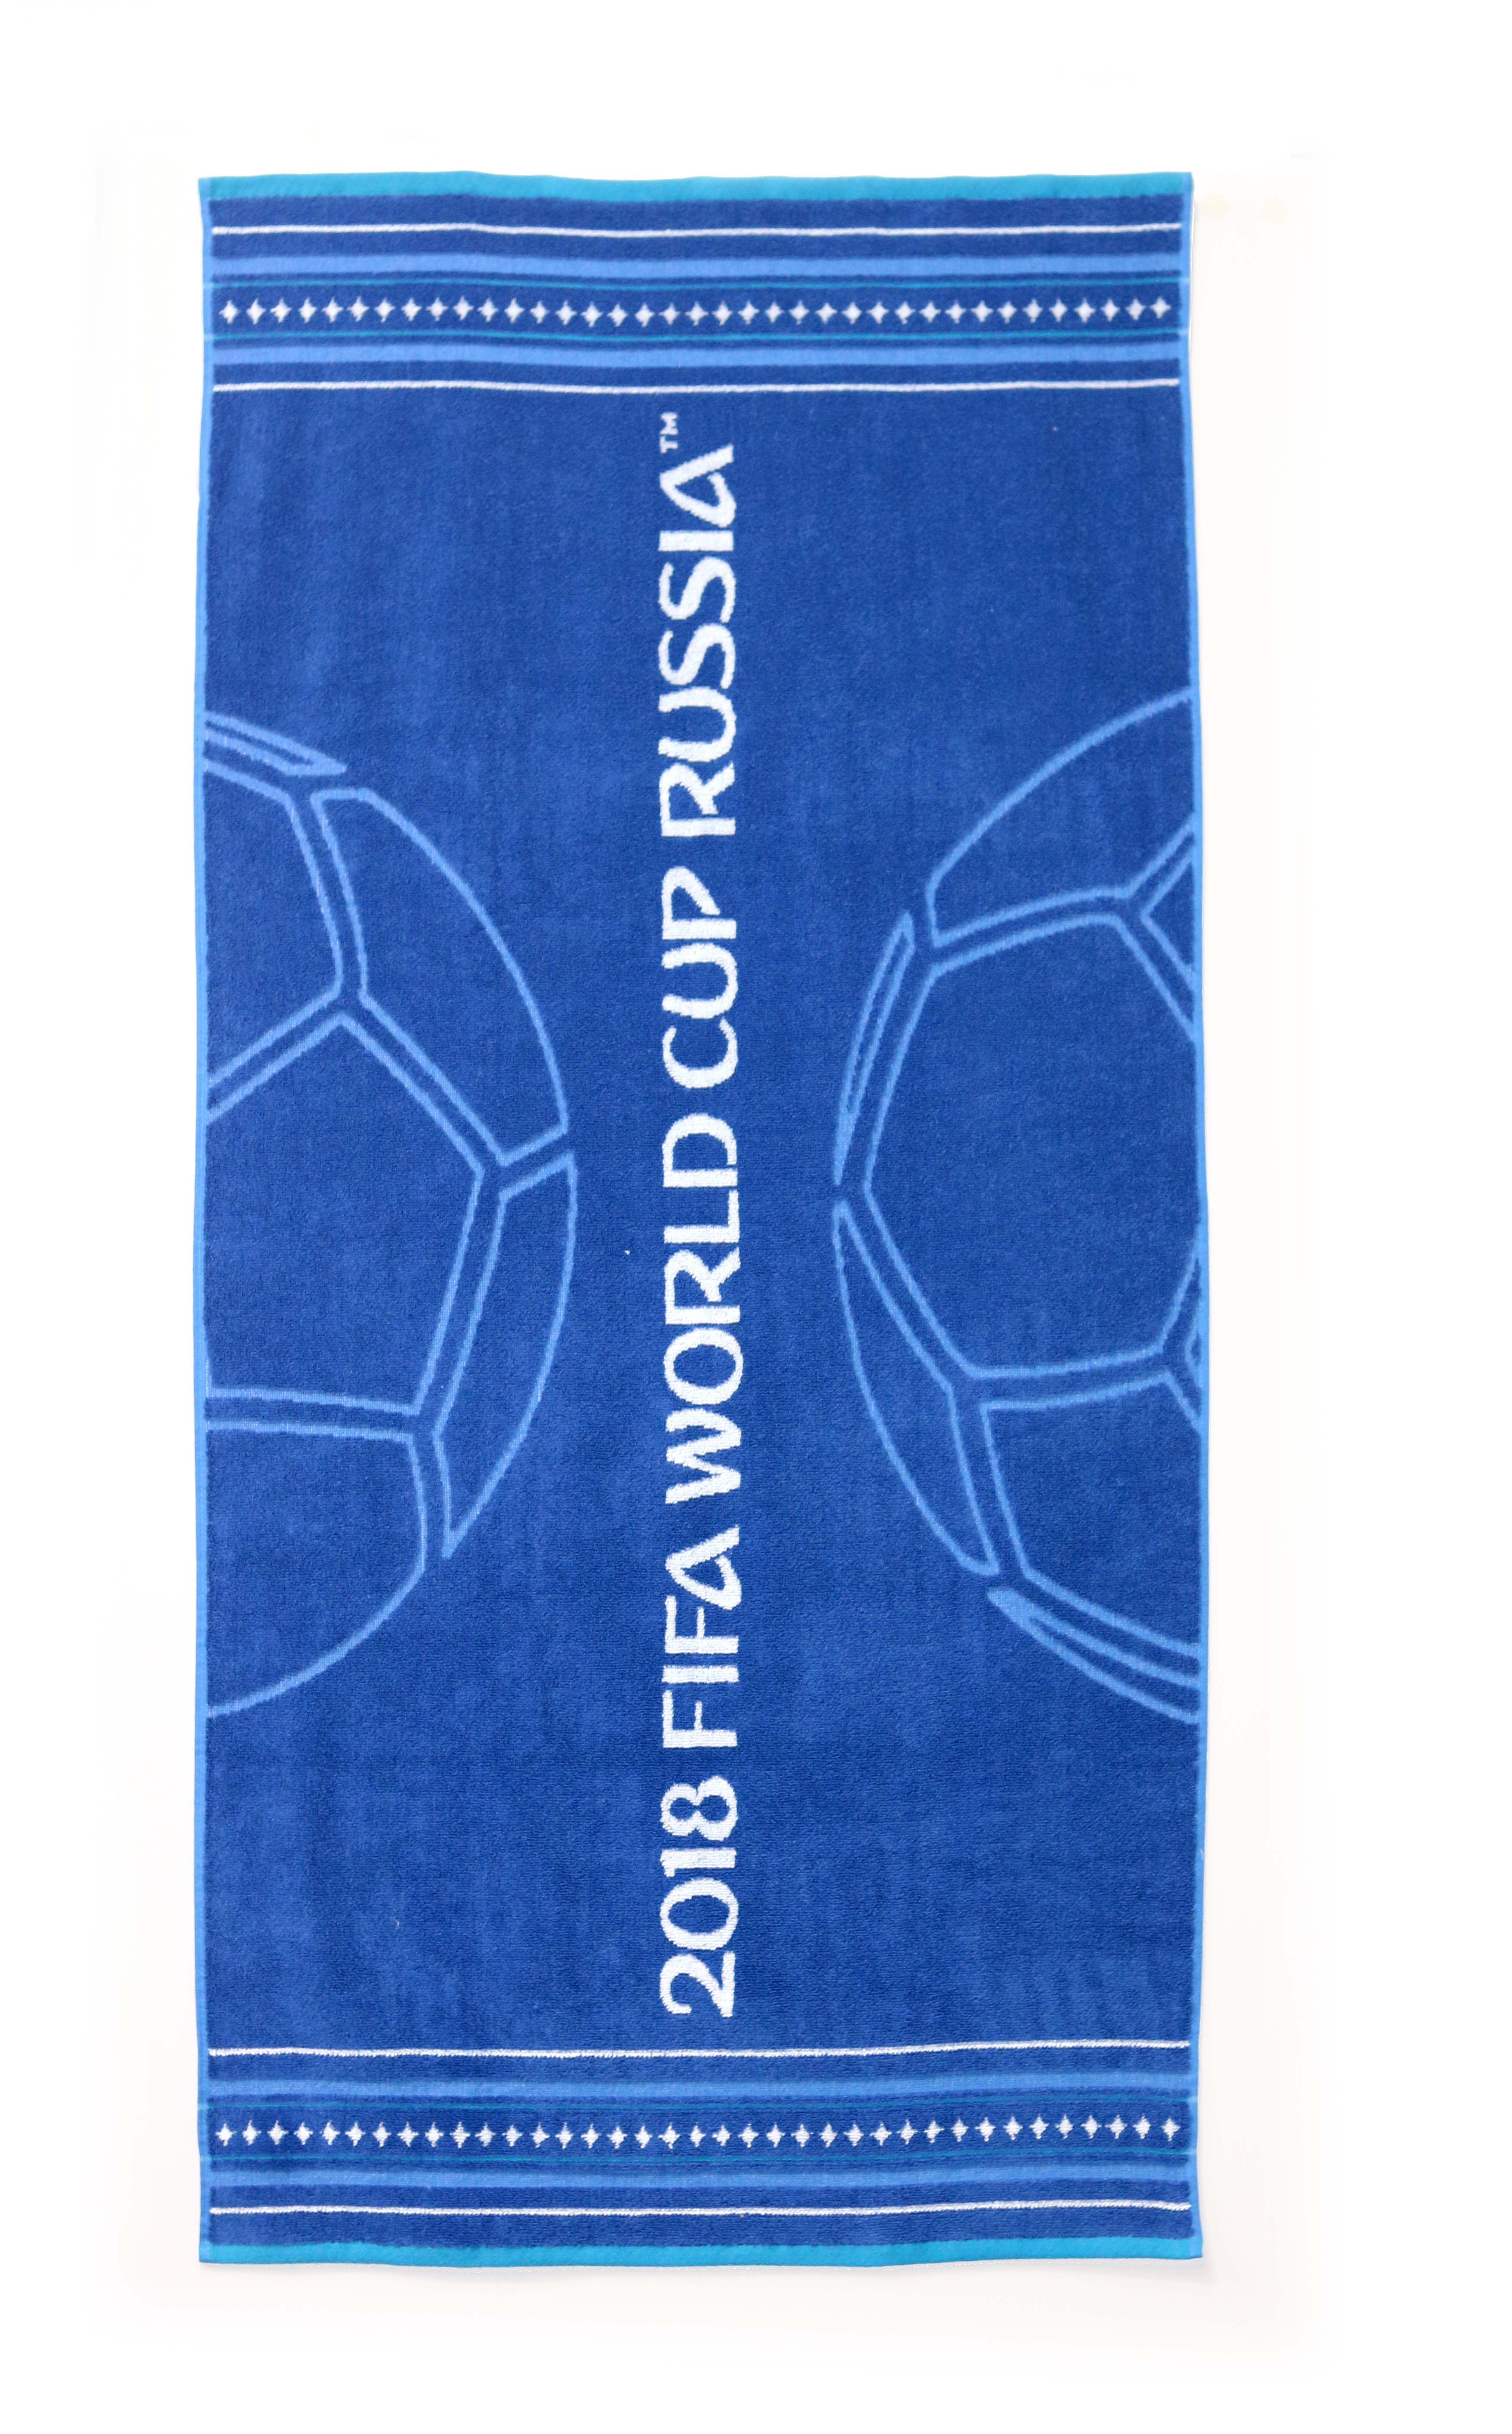 Offizielles FIFA Russia WM 2018 Fußball Handtuch Hexagon World Cup Towel 